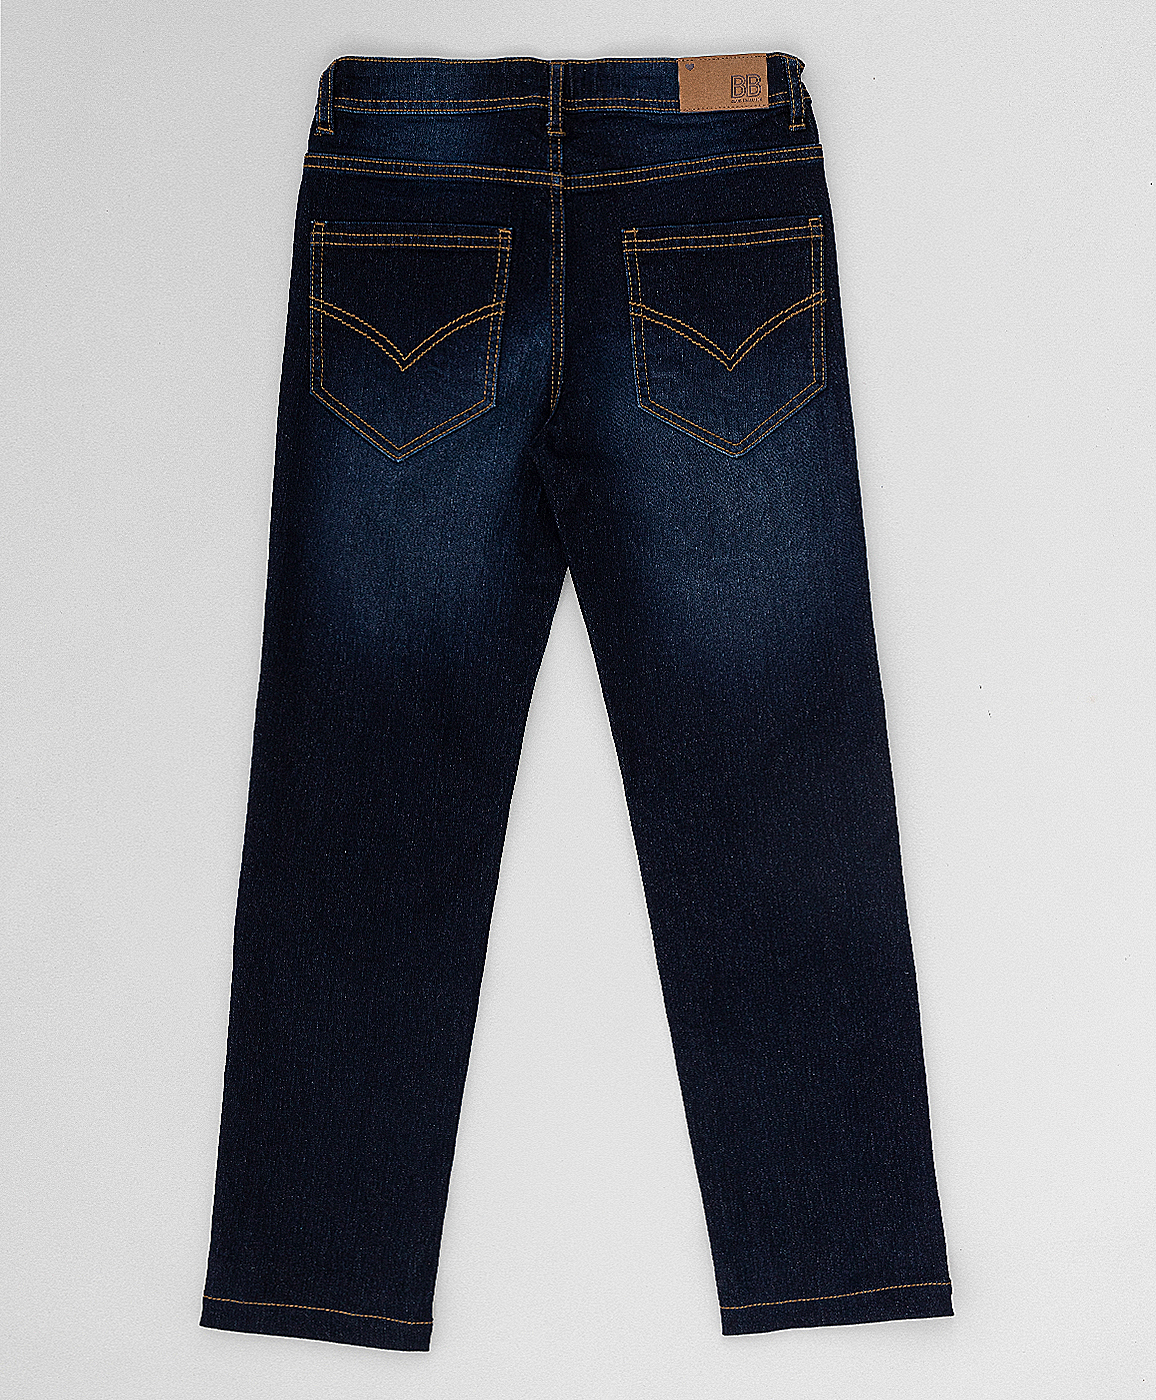 Темно-синие джинсы Button Blue 220BBGMC6302D500, размер 98, цвет синий regular fit / прямые - фото 4